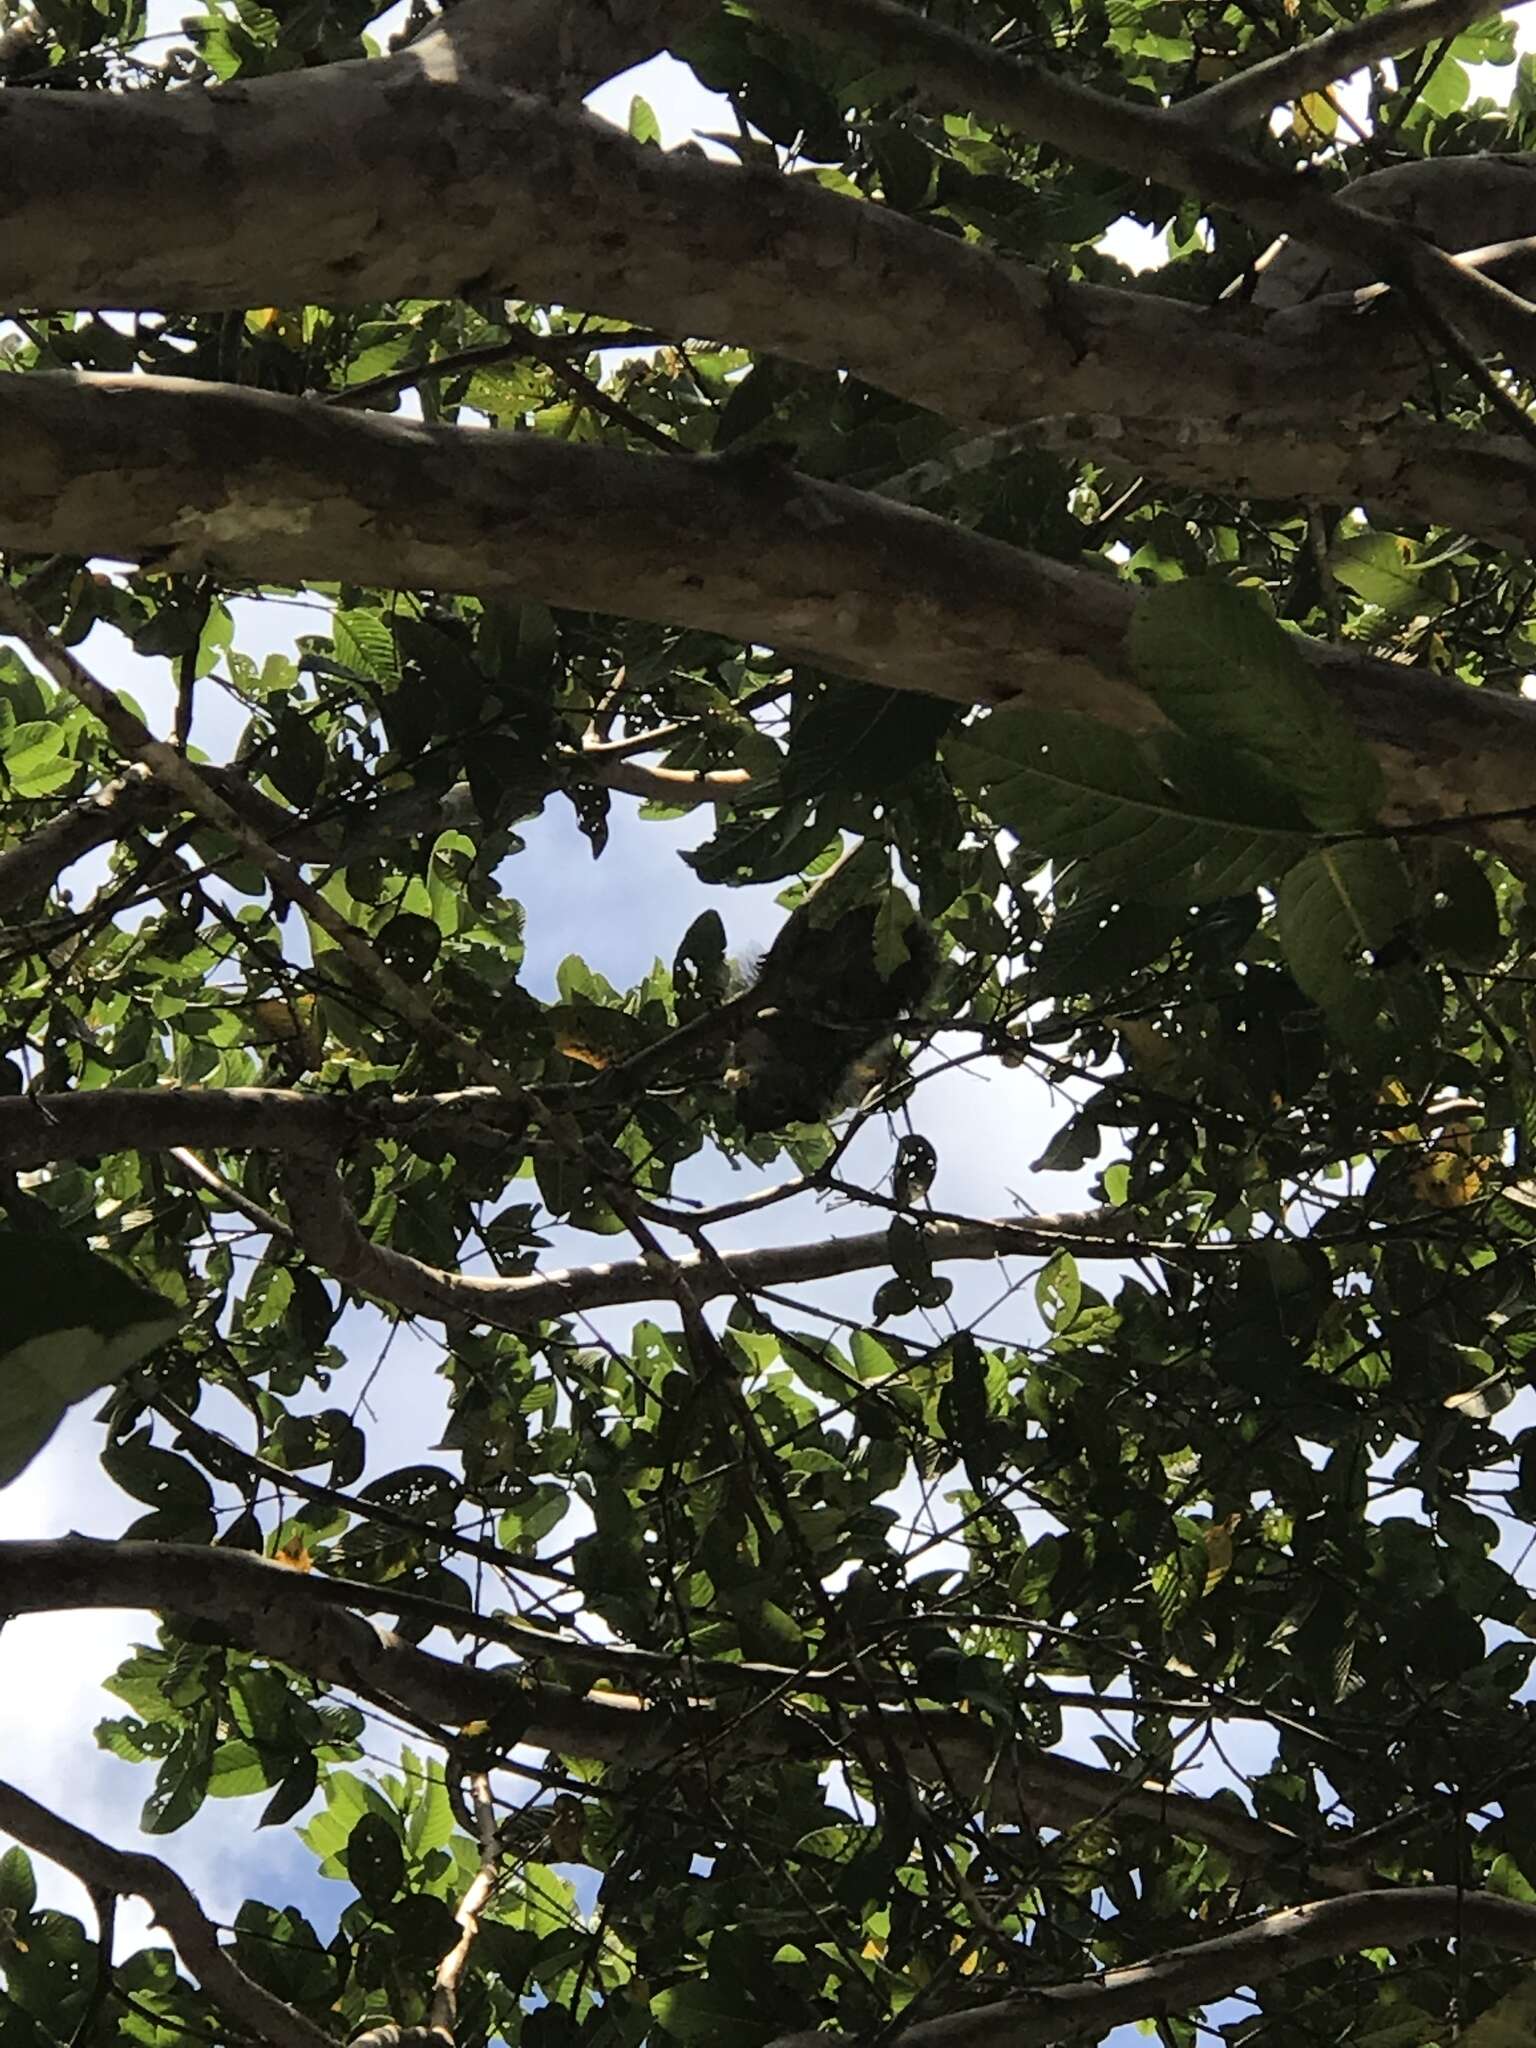 Image of Yucatan Squirrel